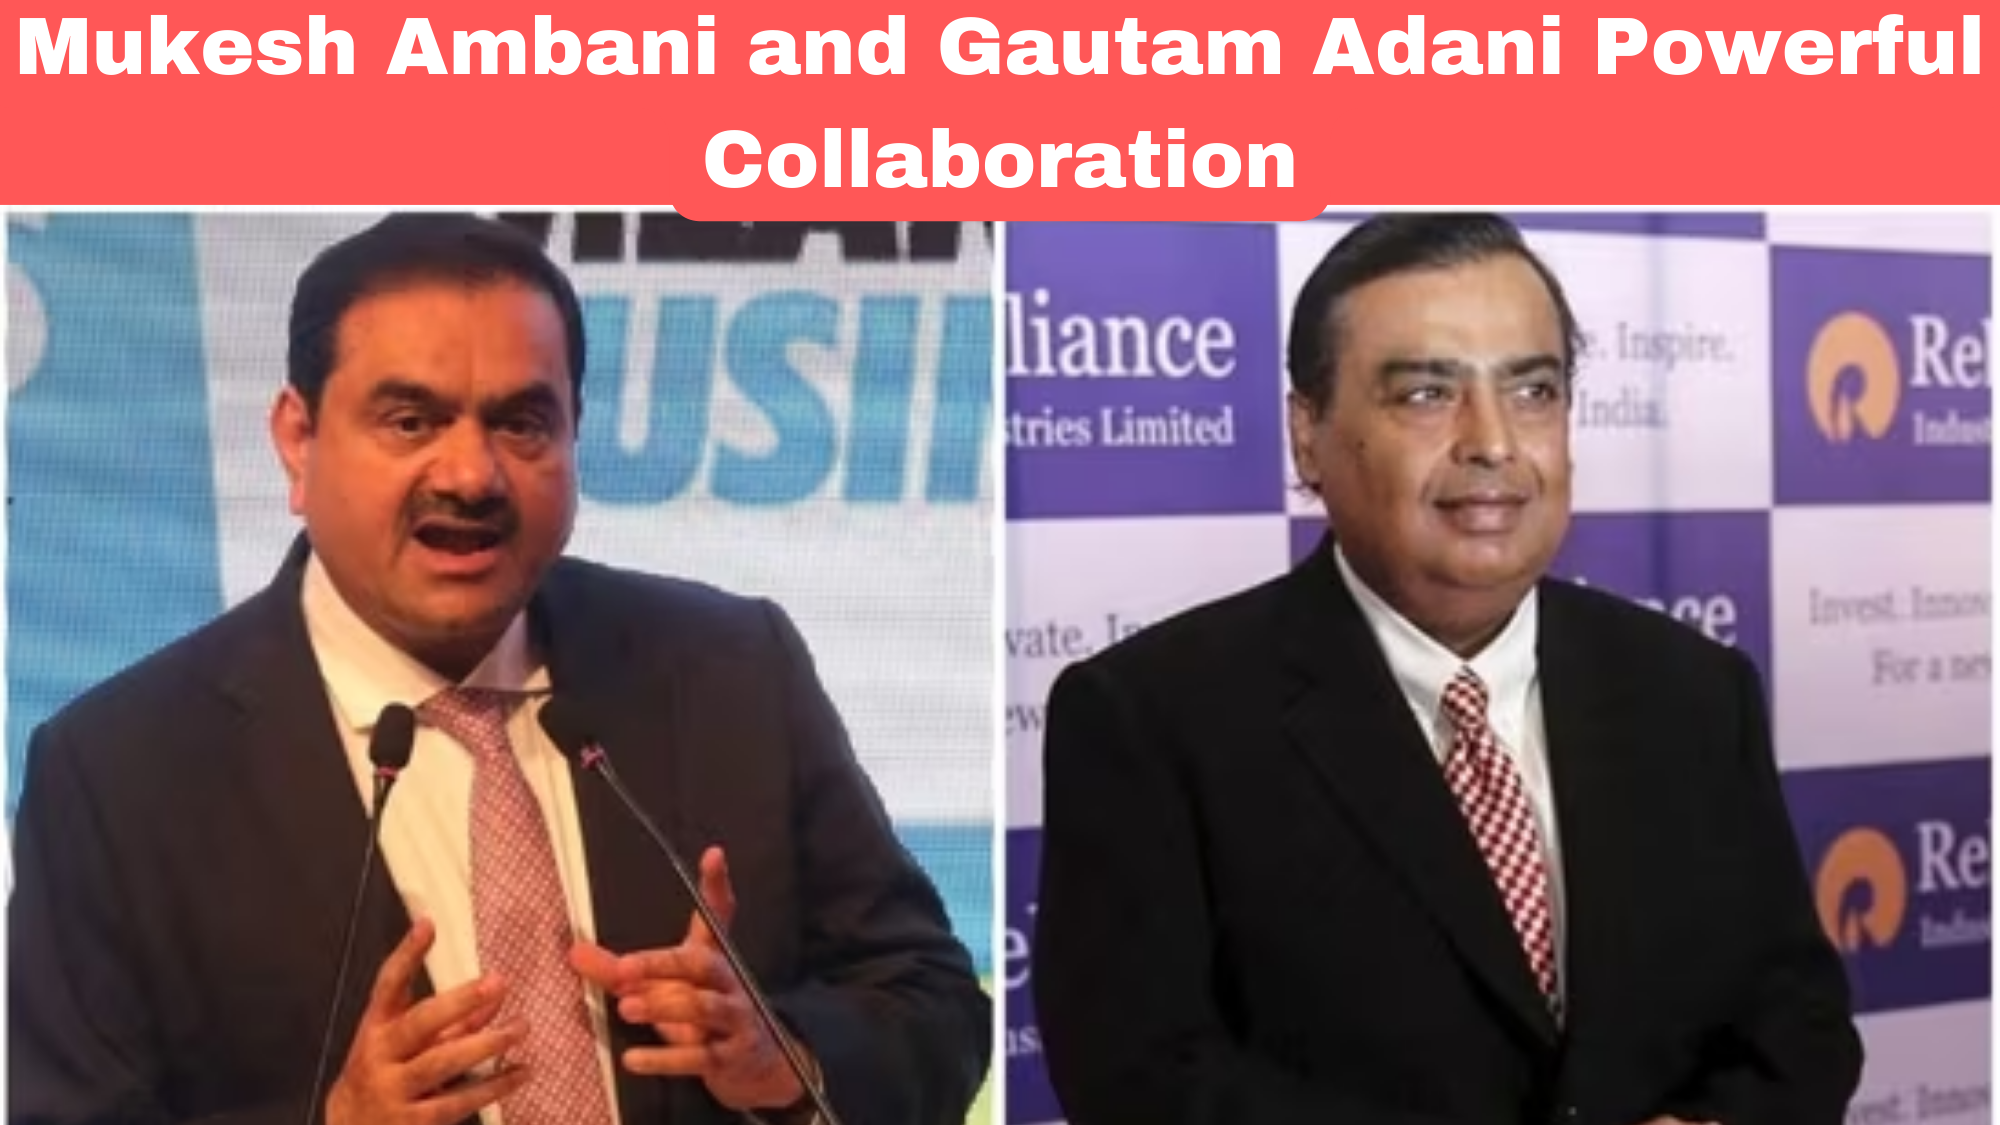 What makes Mukesh Ambani and Gautam Adani: Powerful Collaboration